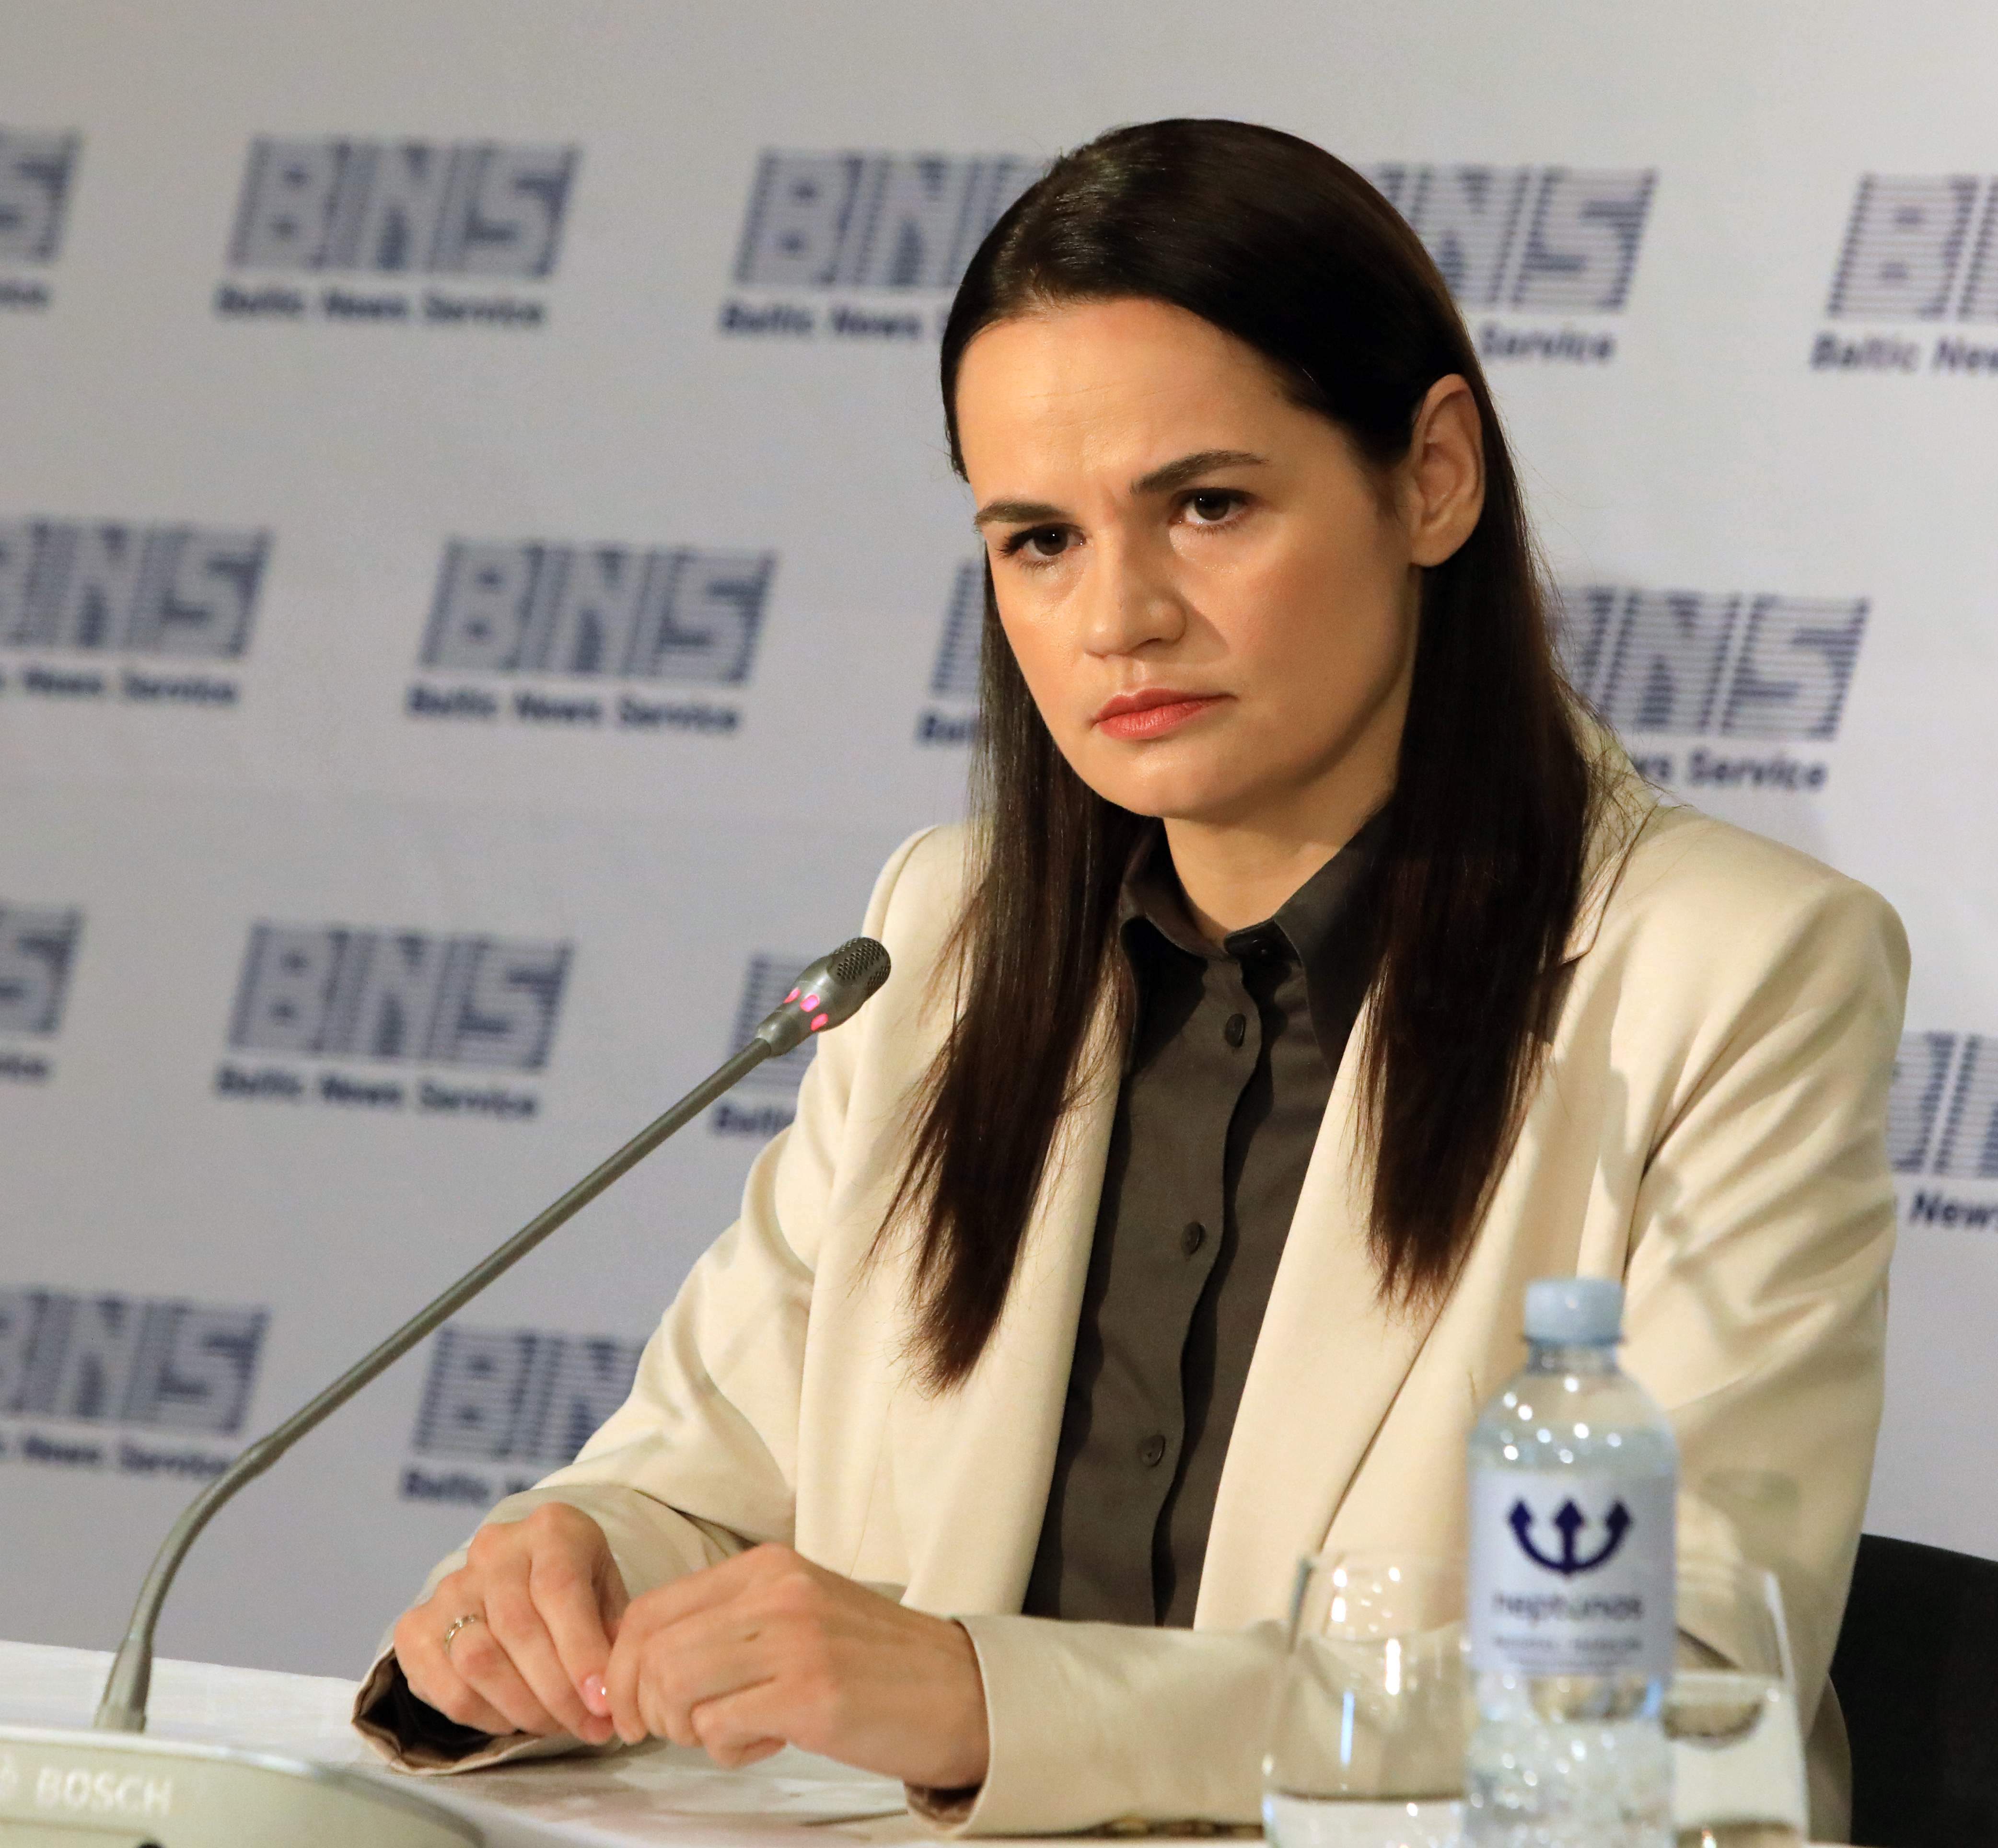 Belarus’s opposition candidate Svetlana Tikhanovskaya in August 2020